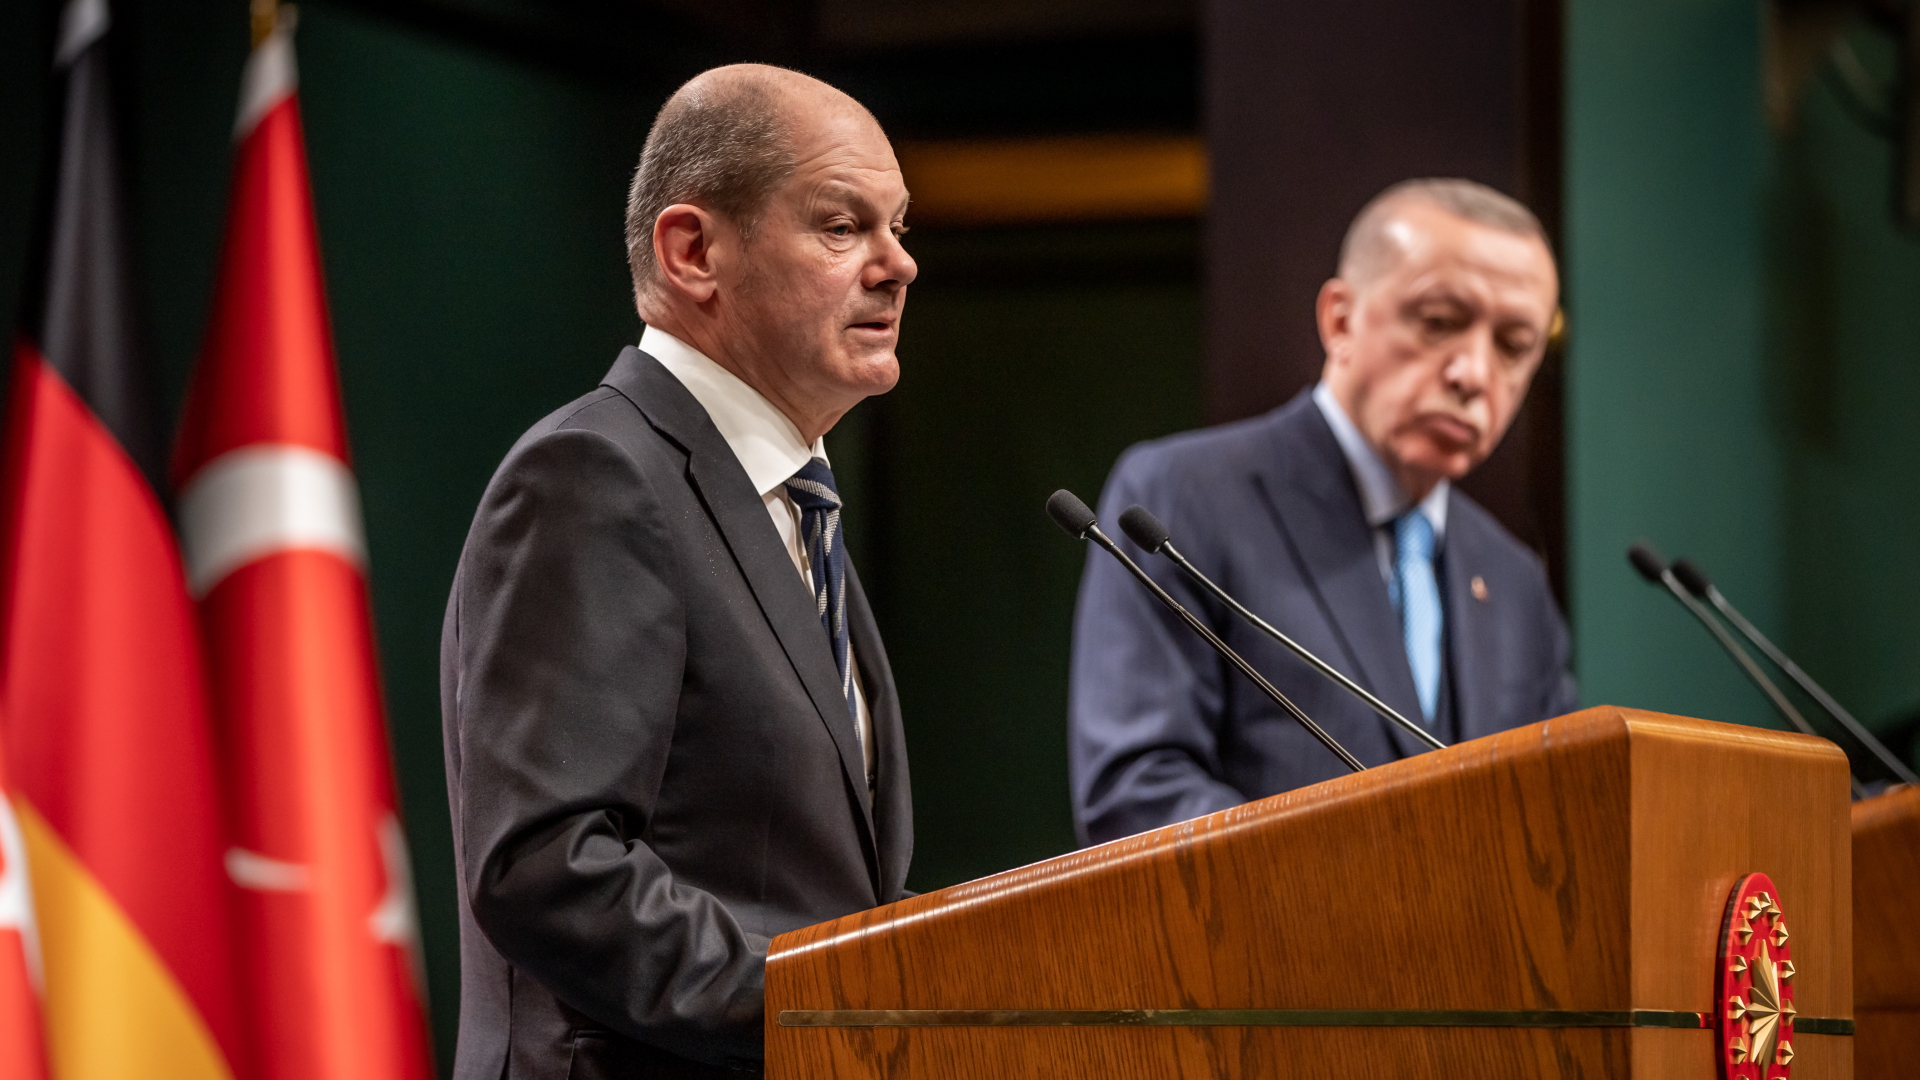 Bundeskanzler Olaf Scholz (SPD), nimmt neben Recep Tayyip Erdogan, Präsident der Türkei, an der Pressekonferenz nach den bilateralen Gesprächen teil. | dpa